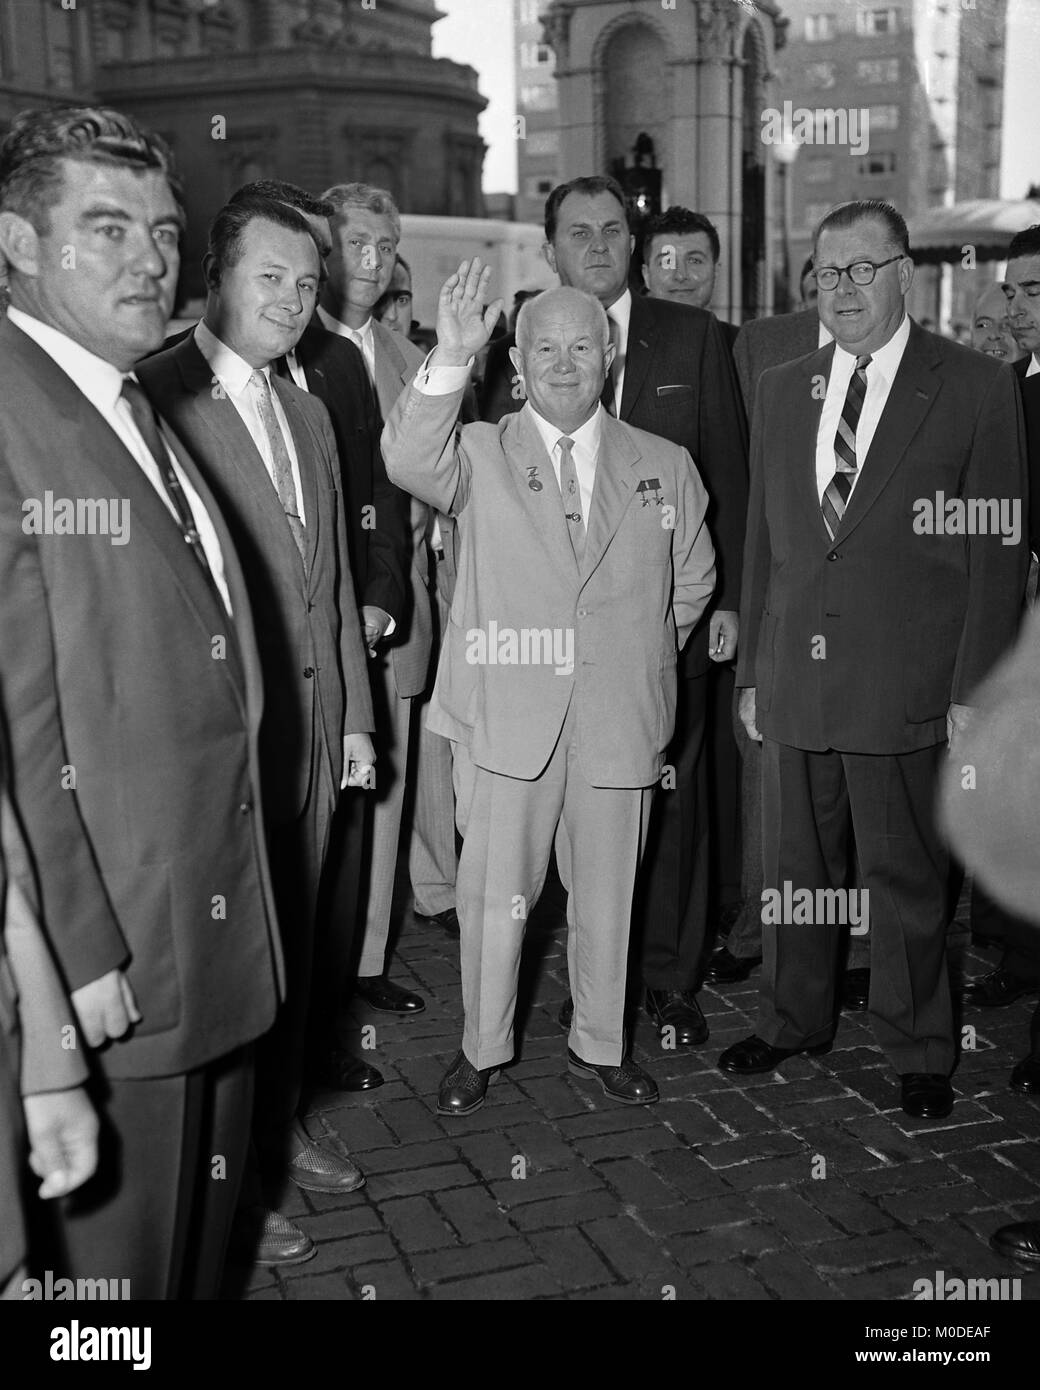 Político soviético Nikita Khrushchev, de pie junto al alcalde de Los Angeles, Norris Poulson, de gira por los Estados Unidos. Los Angeles, octubre de 1959. Foto de stock